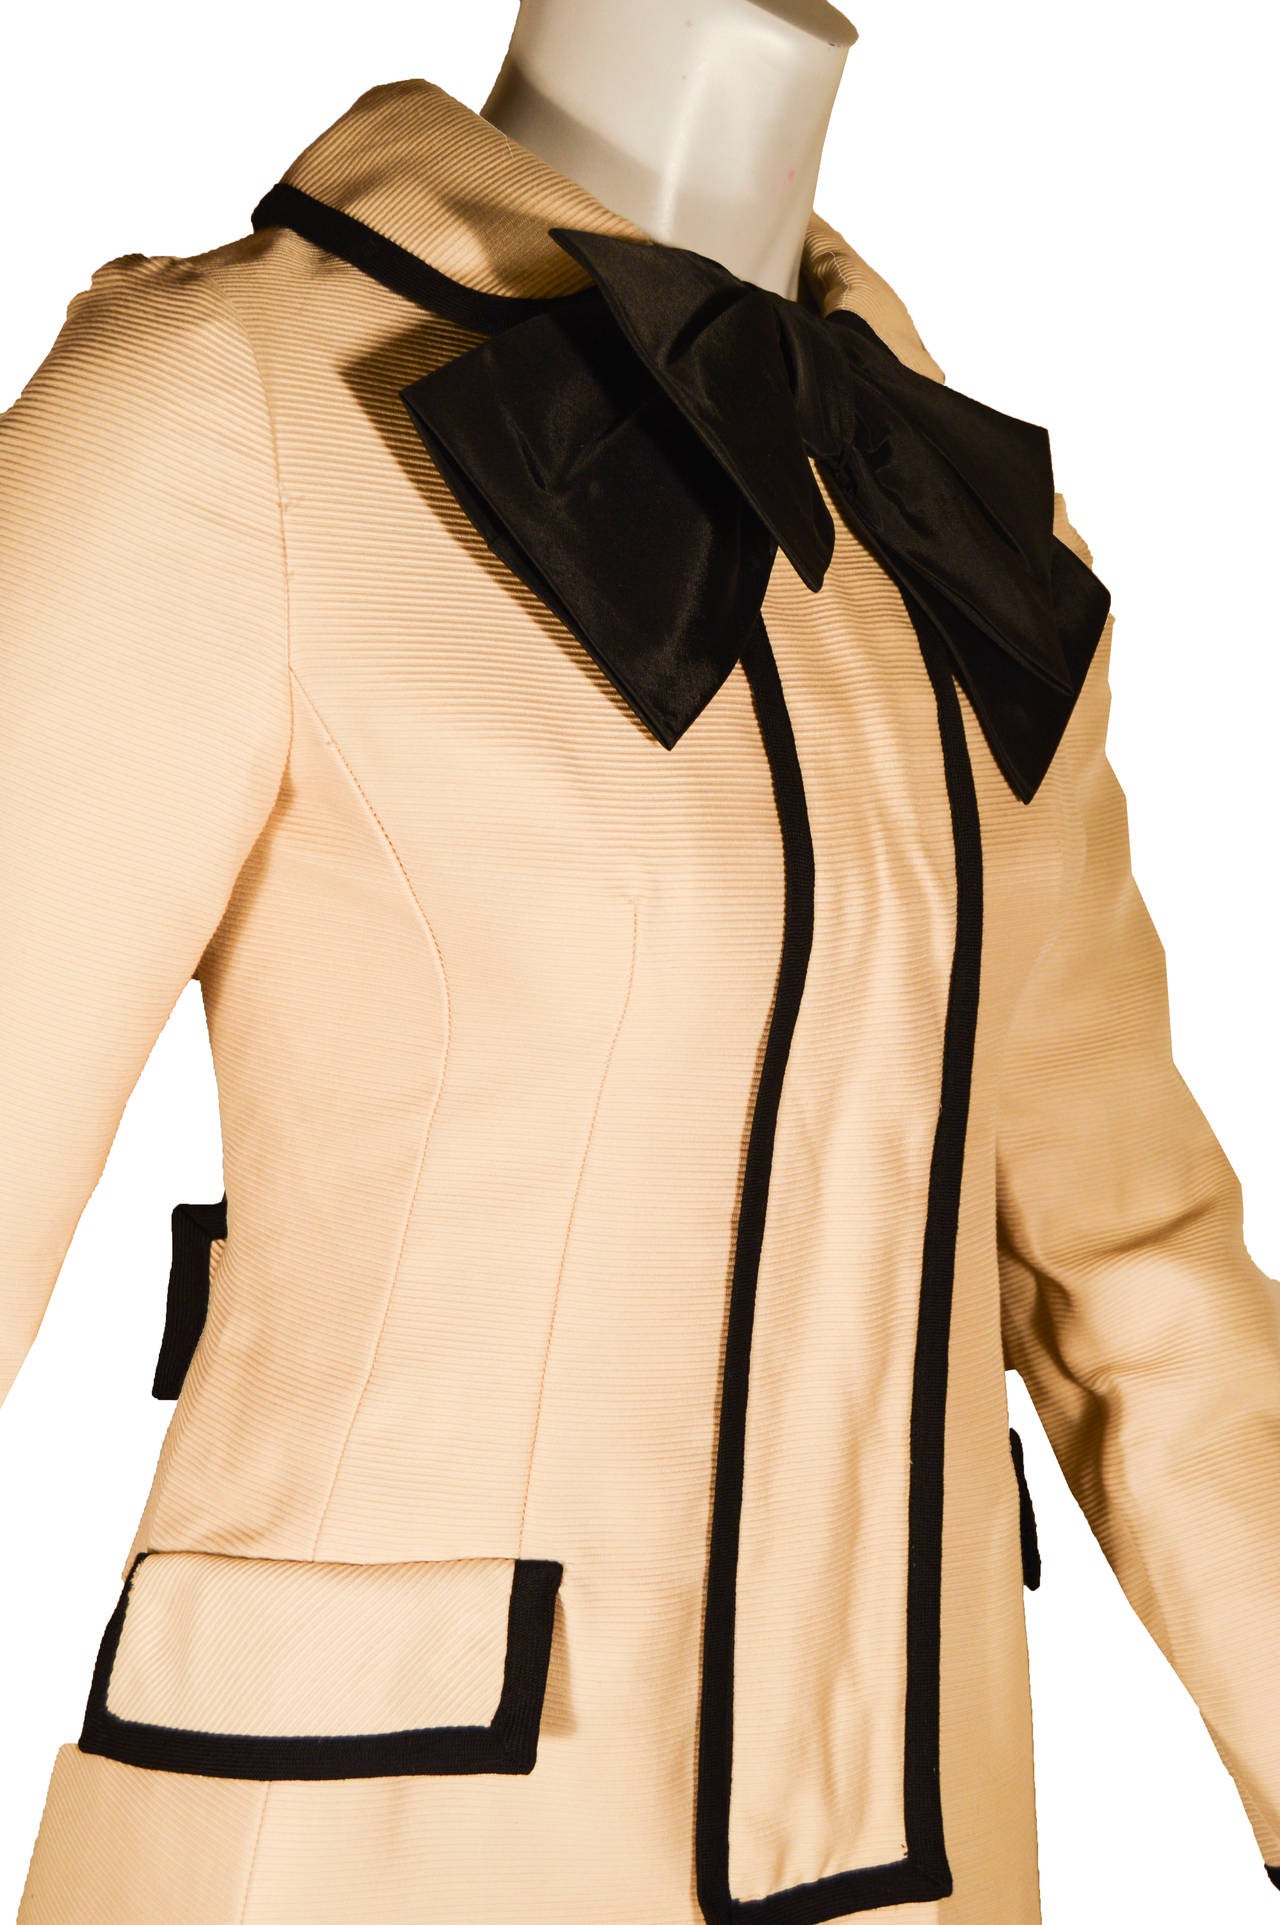 Dieser entzückende Mod-Ära-Mantel in Creme hat kontrastierende schwarze Paspeln und Knöpfe. Es gibt zwei künstliche Taschen und eine übergroße Schleife aus schwarzem Seidenorganza am Hals. Hinter der Mittelleiste befindet sich ein verdeckter